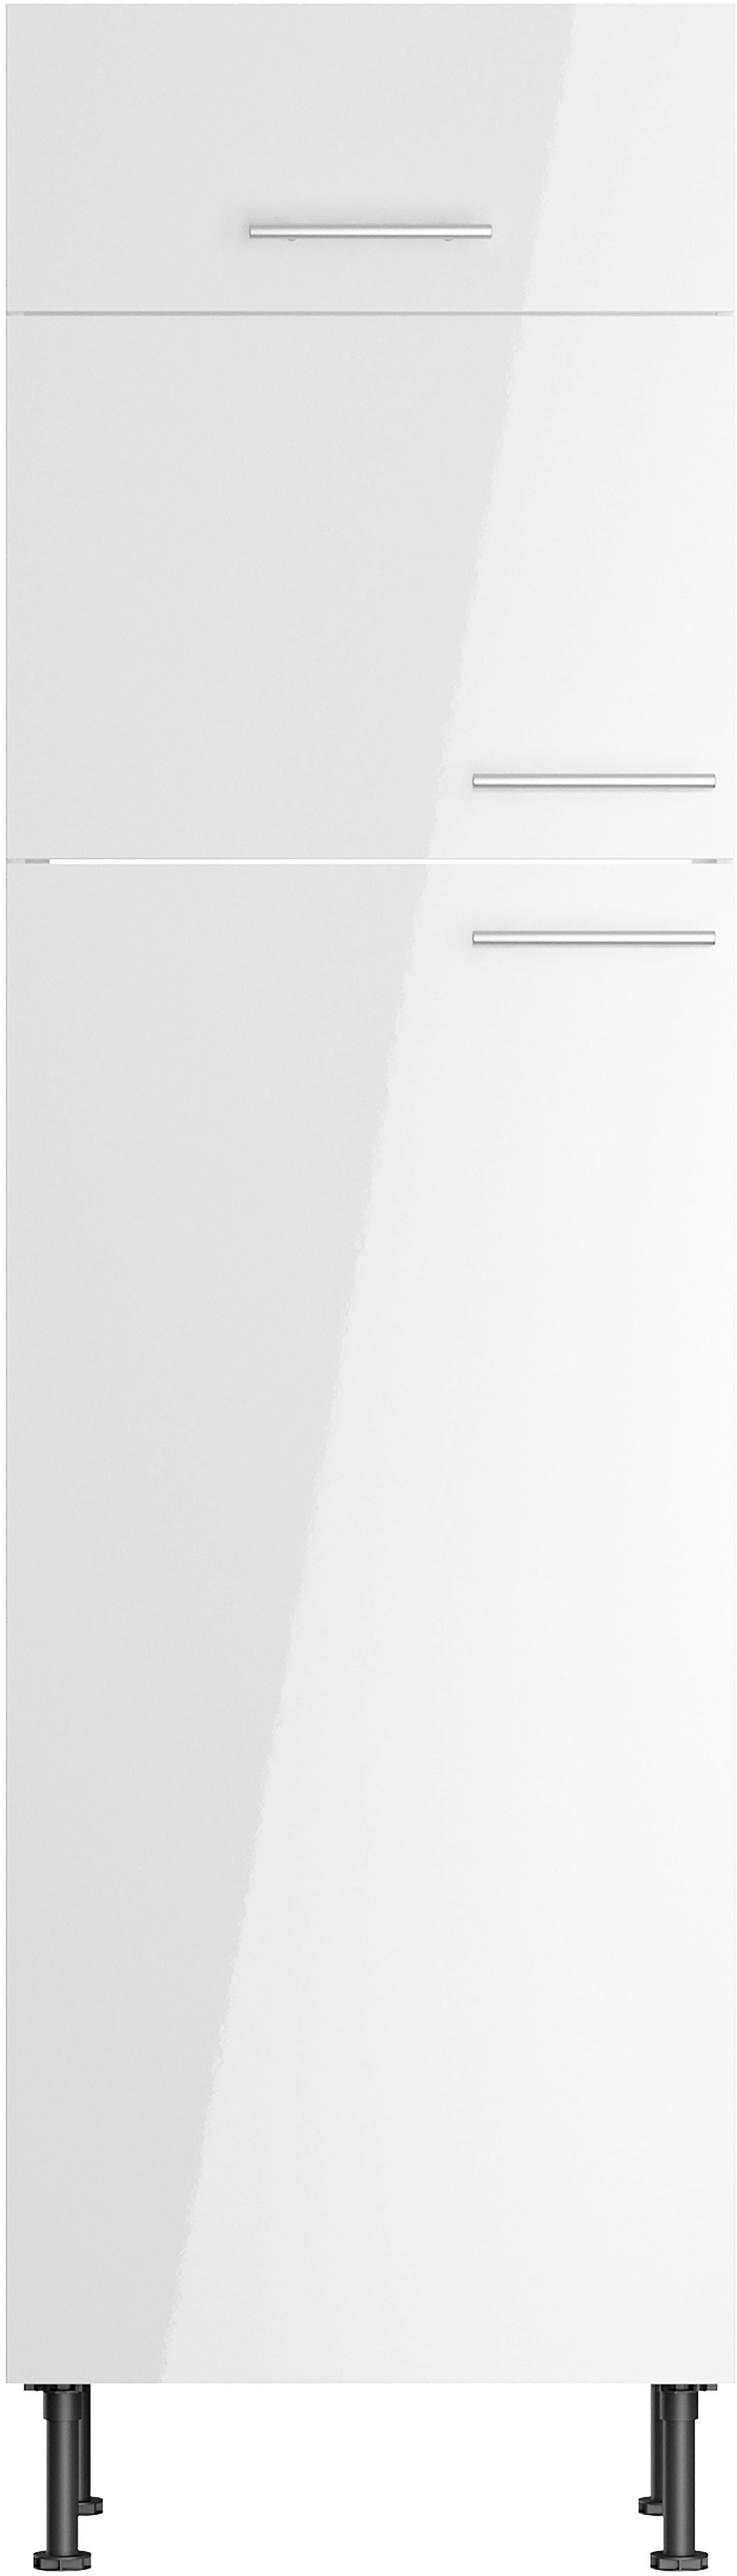 Schnäppchen 60 cm Klara weiß Kühlumbauschrank OPTIFIT lackiert/weiß Breite